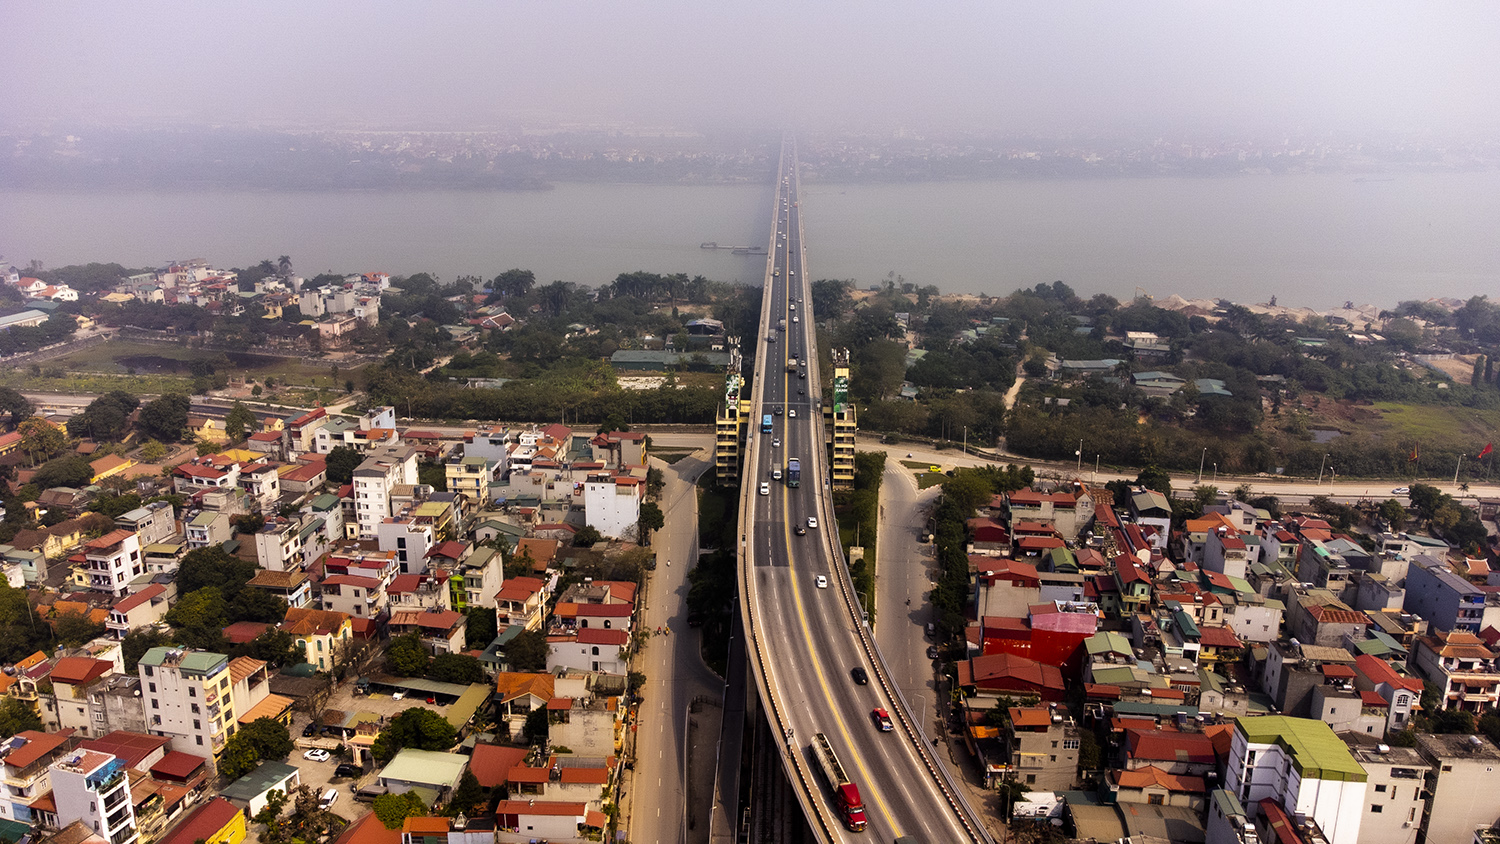 Được khởi công vào ngày 26/11/1974 và khánh thành vào ngày 9/5/1985, Thăng Long là một trong những cây cầu có thời gian thi công dài nhất ở Việt Nam.